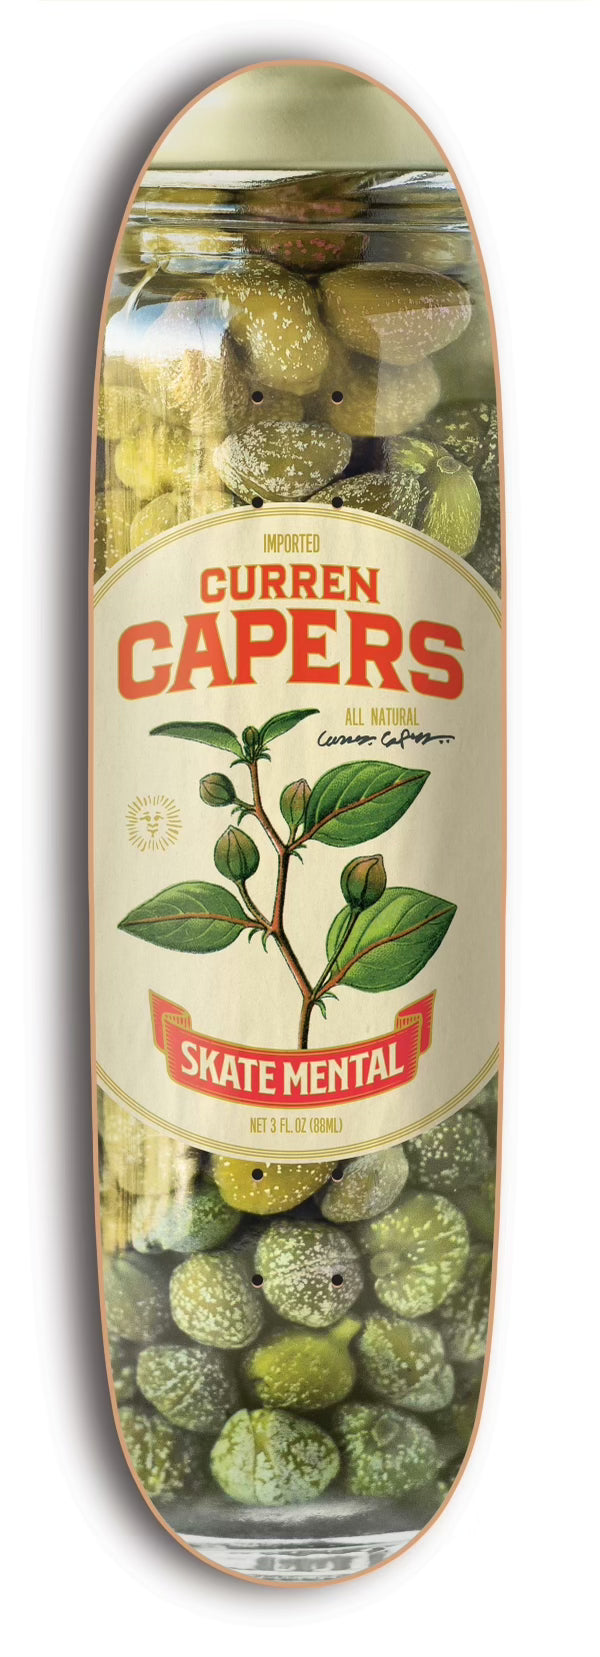 Curran Capers - 9.0"